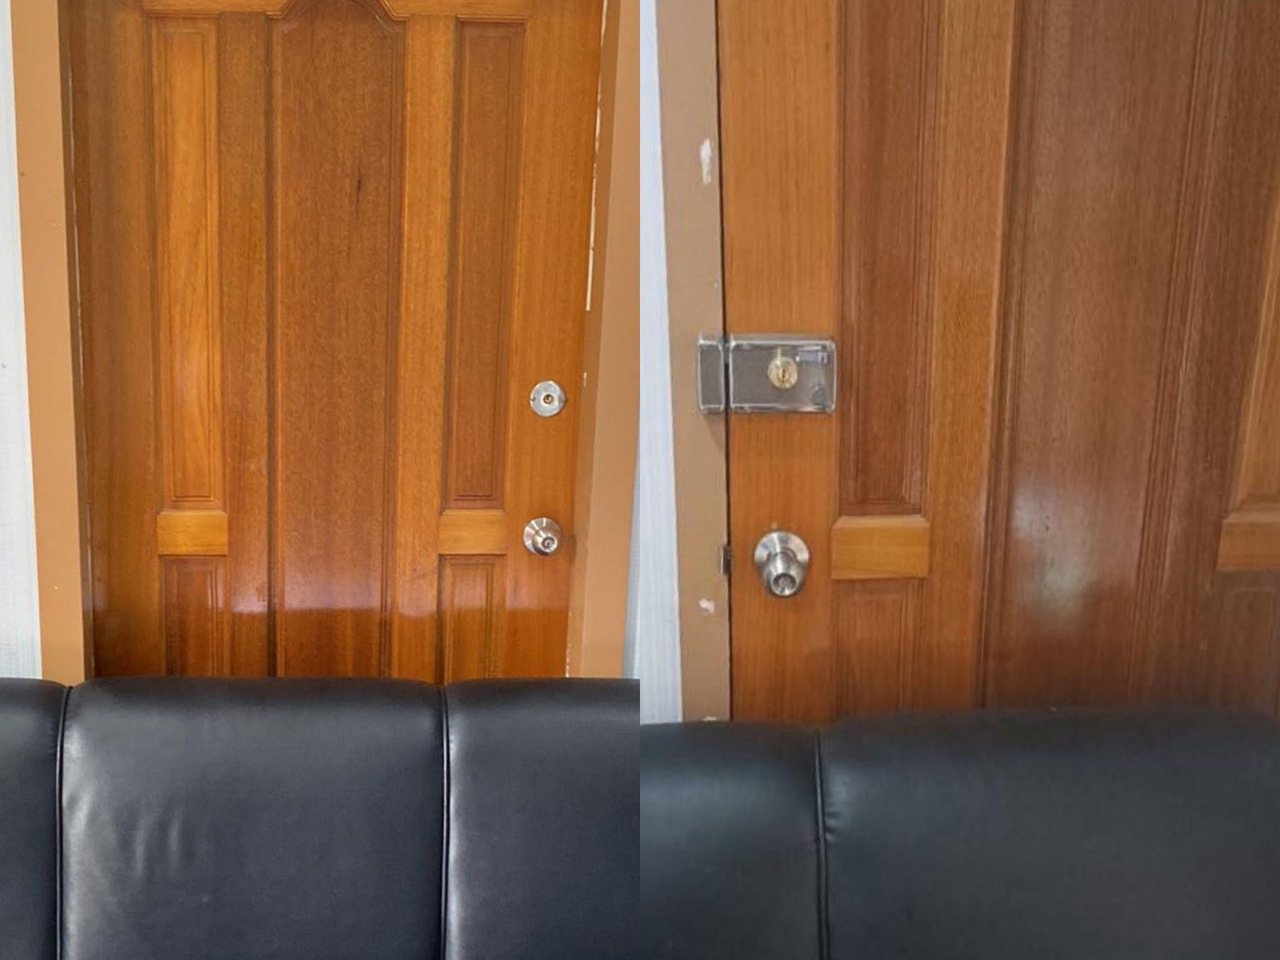 林小姐出示照片證明，自己的房間（左）包括雙頭鎖和喇叭鎖都無法自己鎖上，因為開關都在隔壁的房間（右）。圖／讀者提供